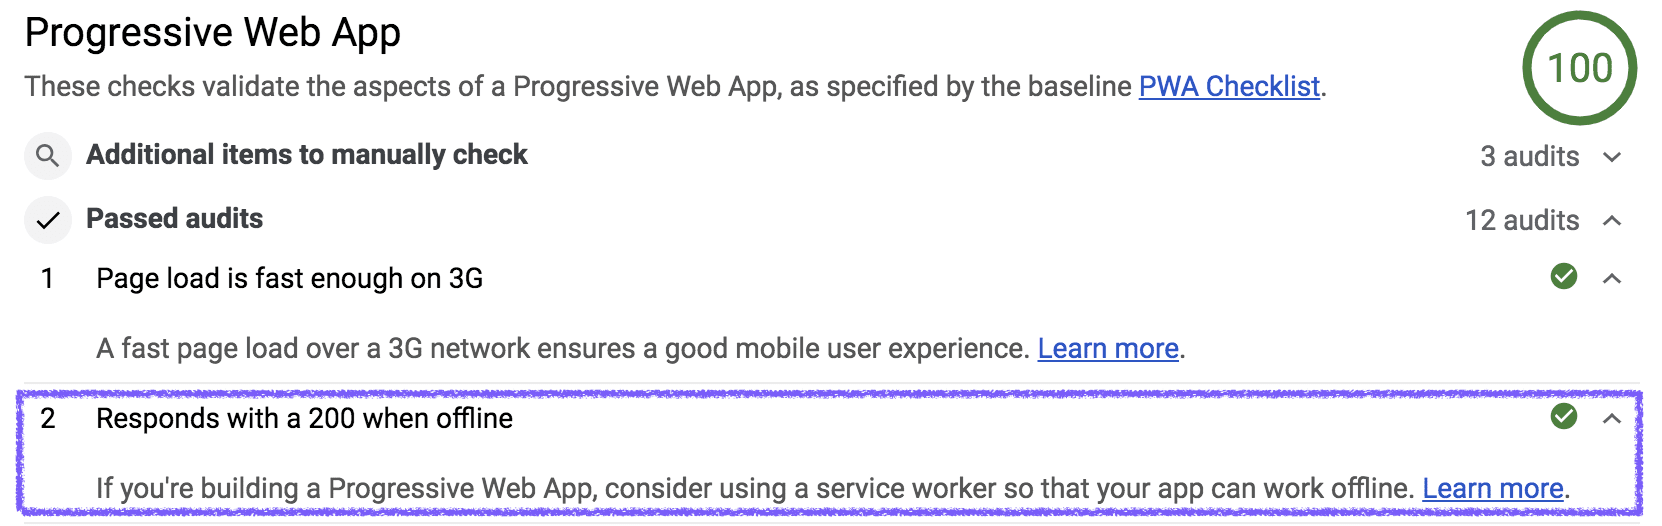 דוח Progressive Web App של Lighthouse עם שיעור תגובה של 200 בביקורת במצב אופליין.